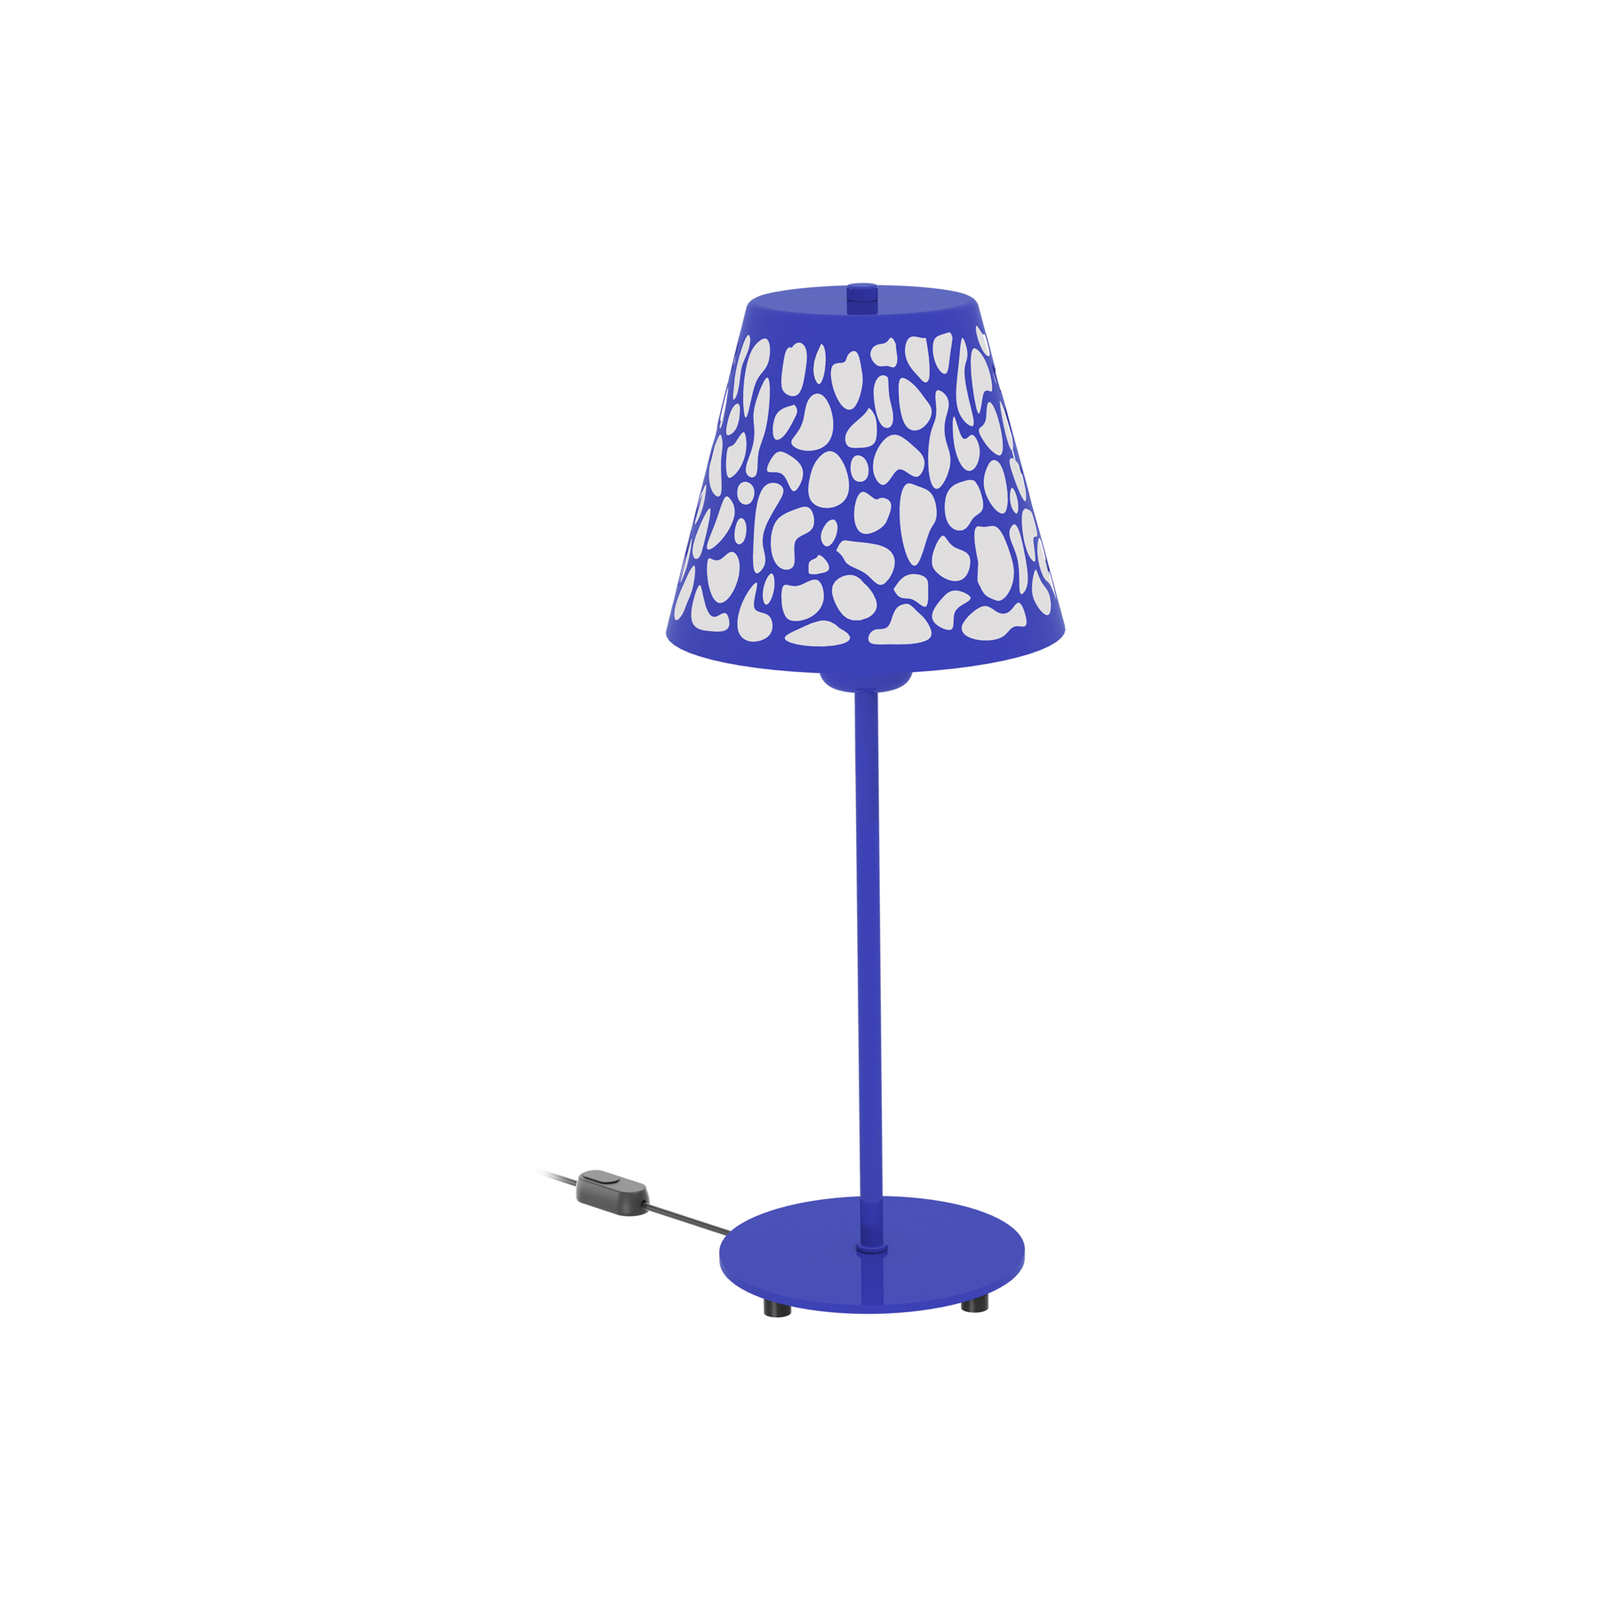 Aluminor Nihoa bordlampe med hulmønster blå/hvid